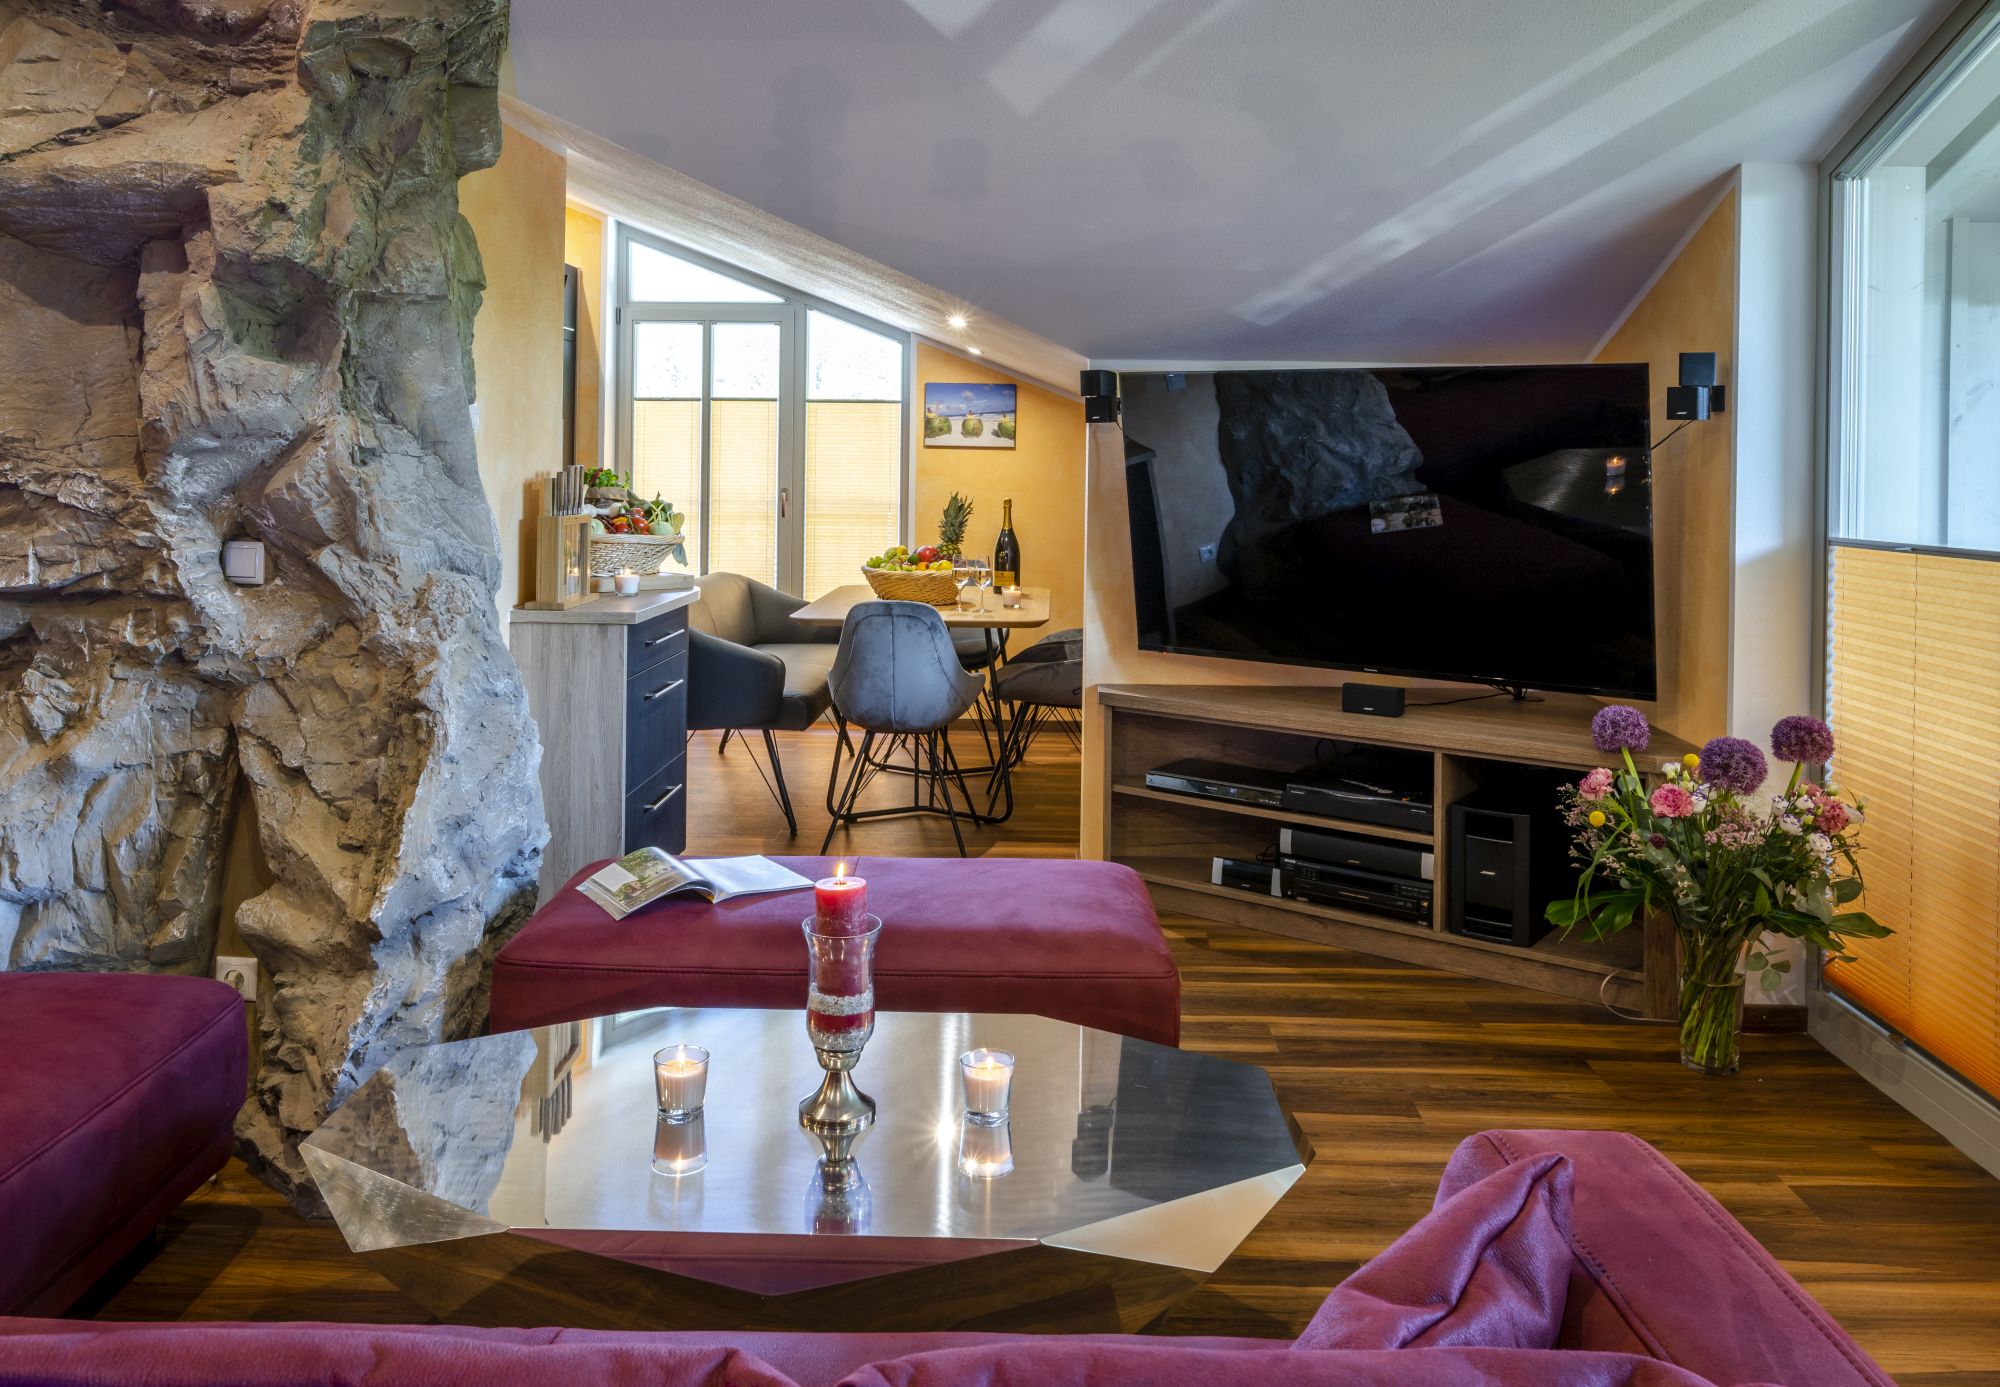 7 Nächte in der 5 Sterne Luxus-Suite Berchtesgadener Hochthron